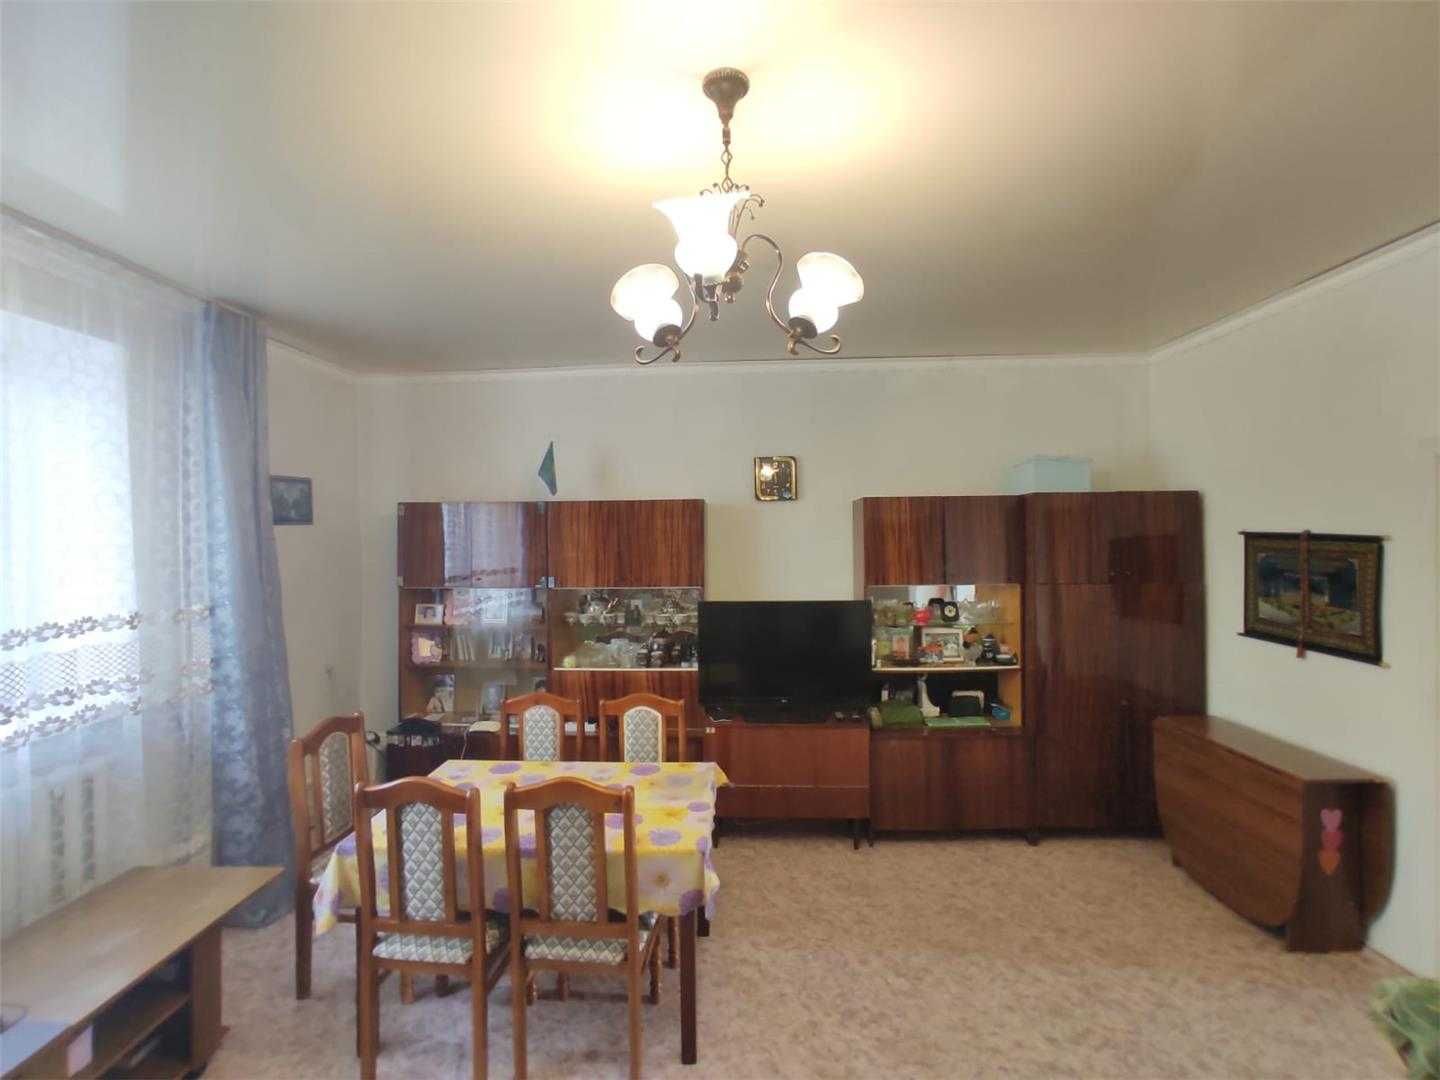 Продам дом на 2-х хозяев или обменяю на квартиру в Сортировке